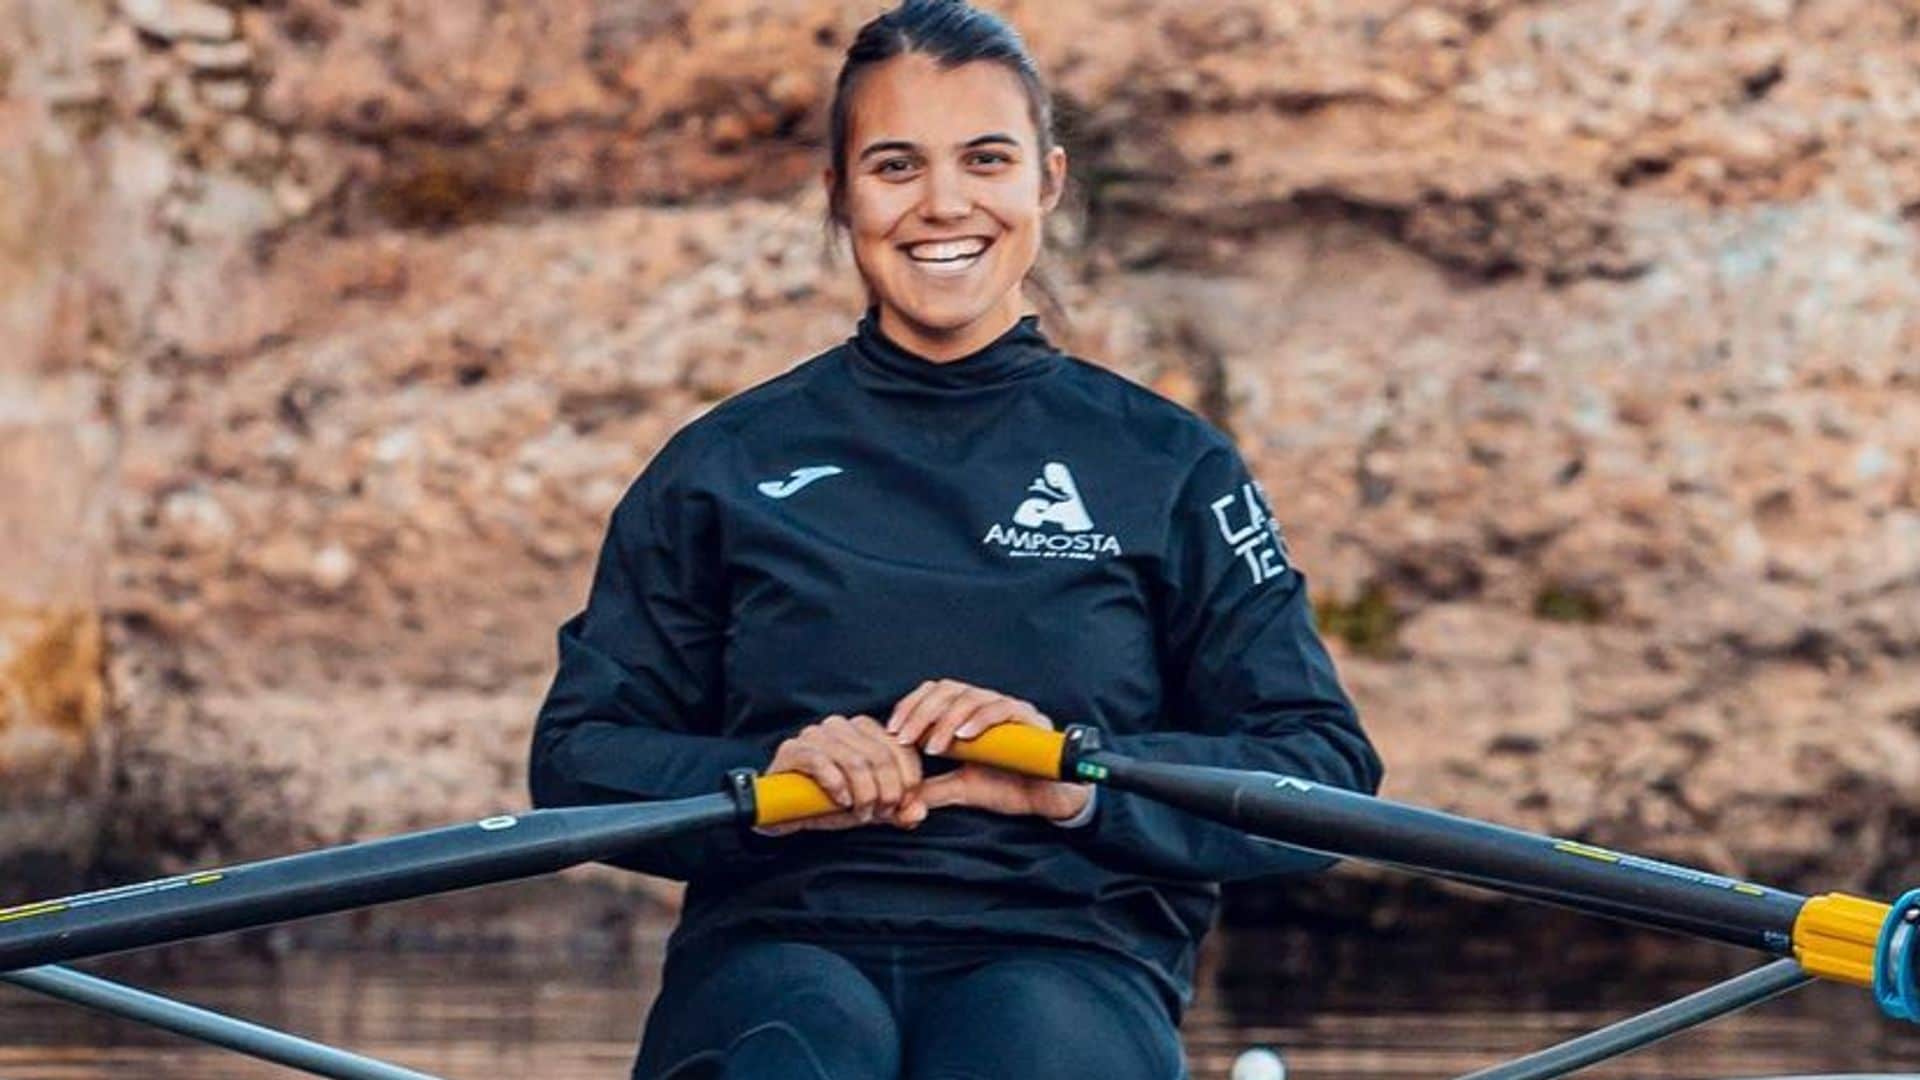 De cerca con Aina Cid, la apuesta del remo español en los Juegos Olímpicos: 'Estuve a nada de abandonar mi sueño'